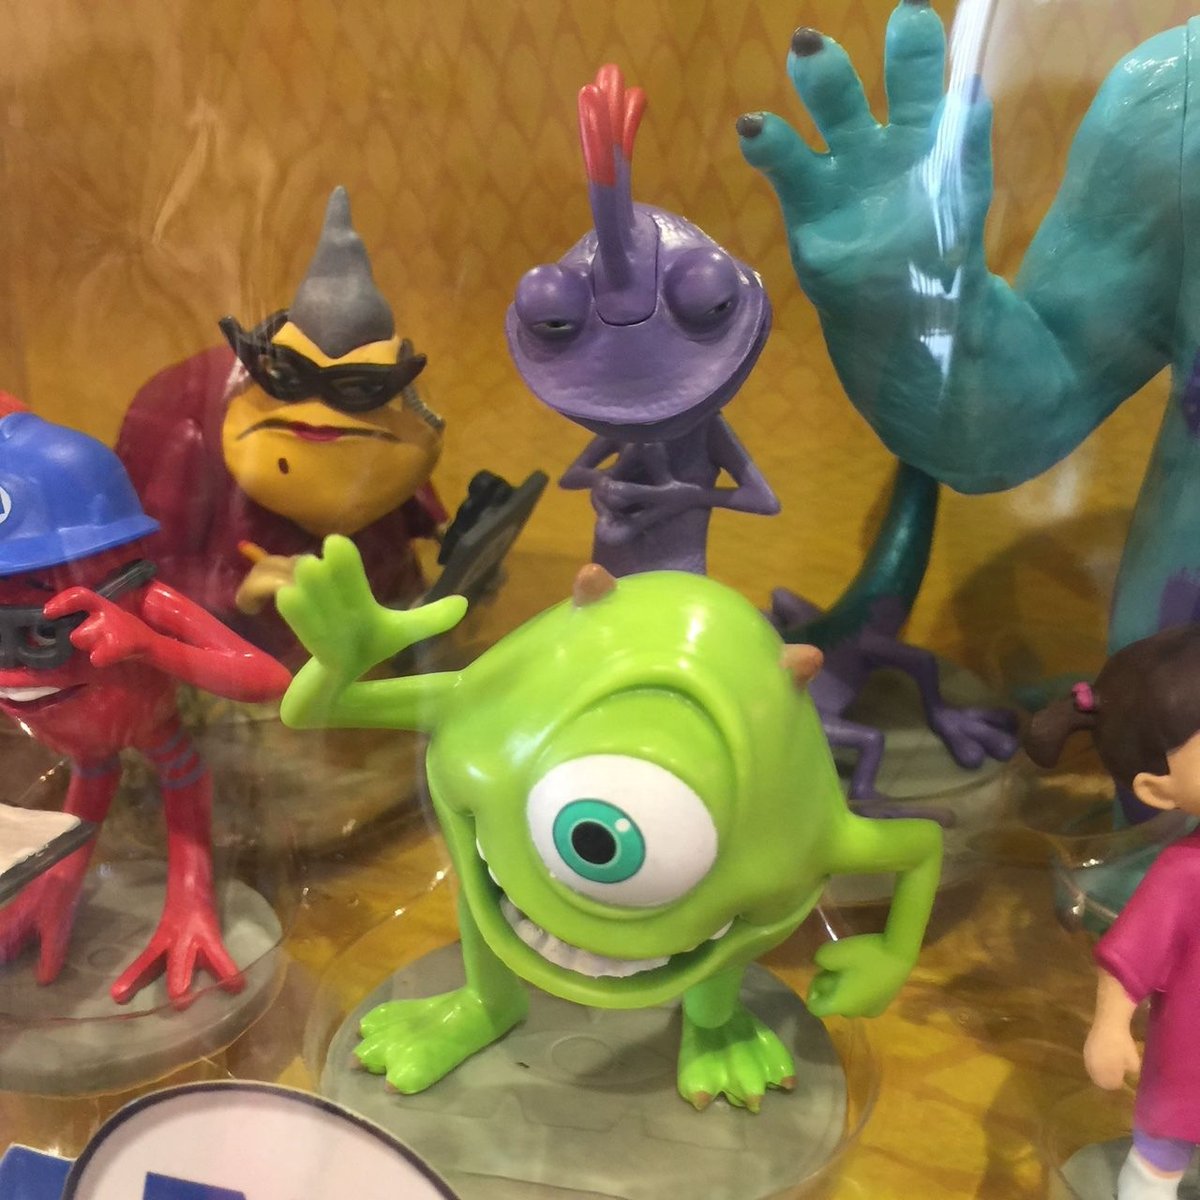 ディズニー シー Pixar ピクサー バウンド サリーマイクセット